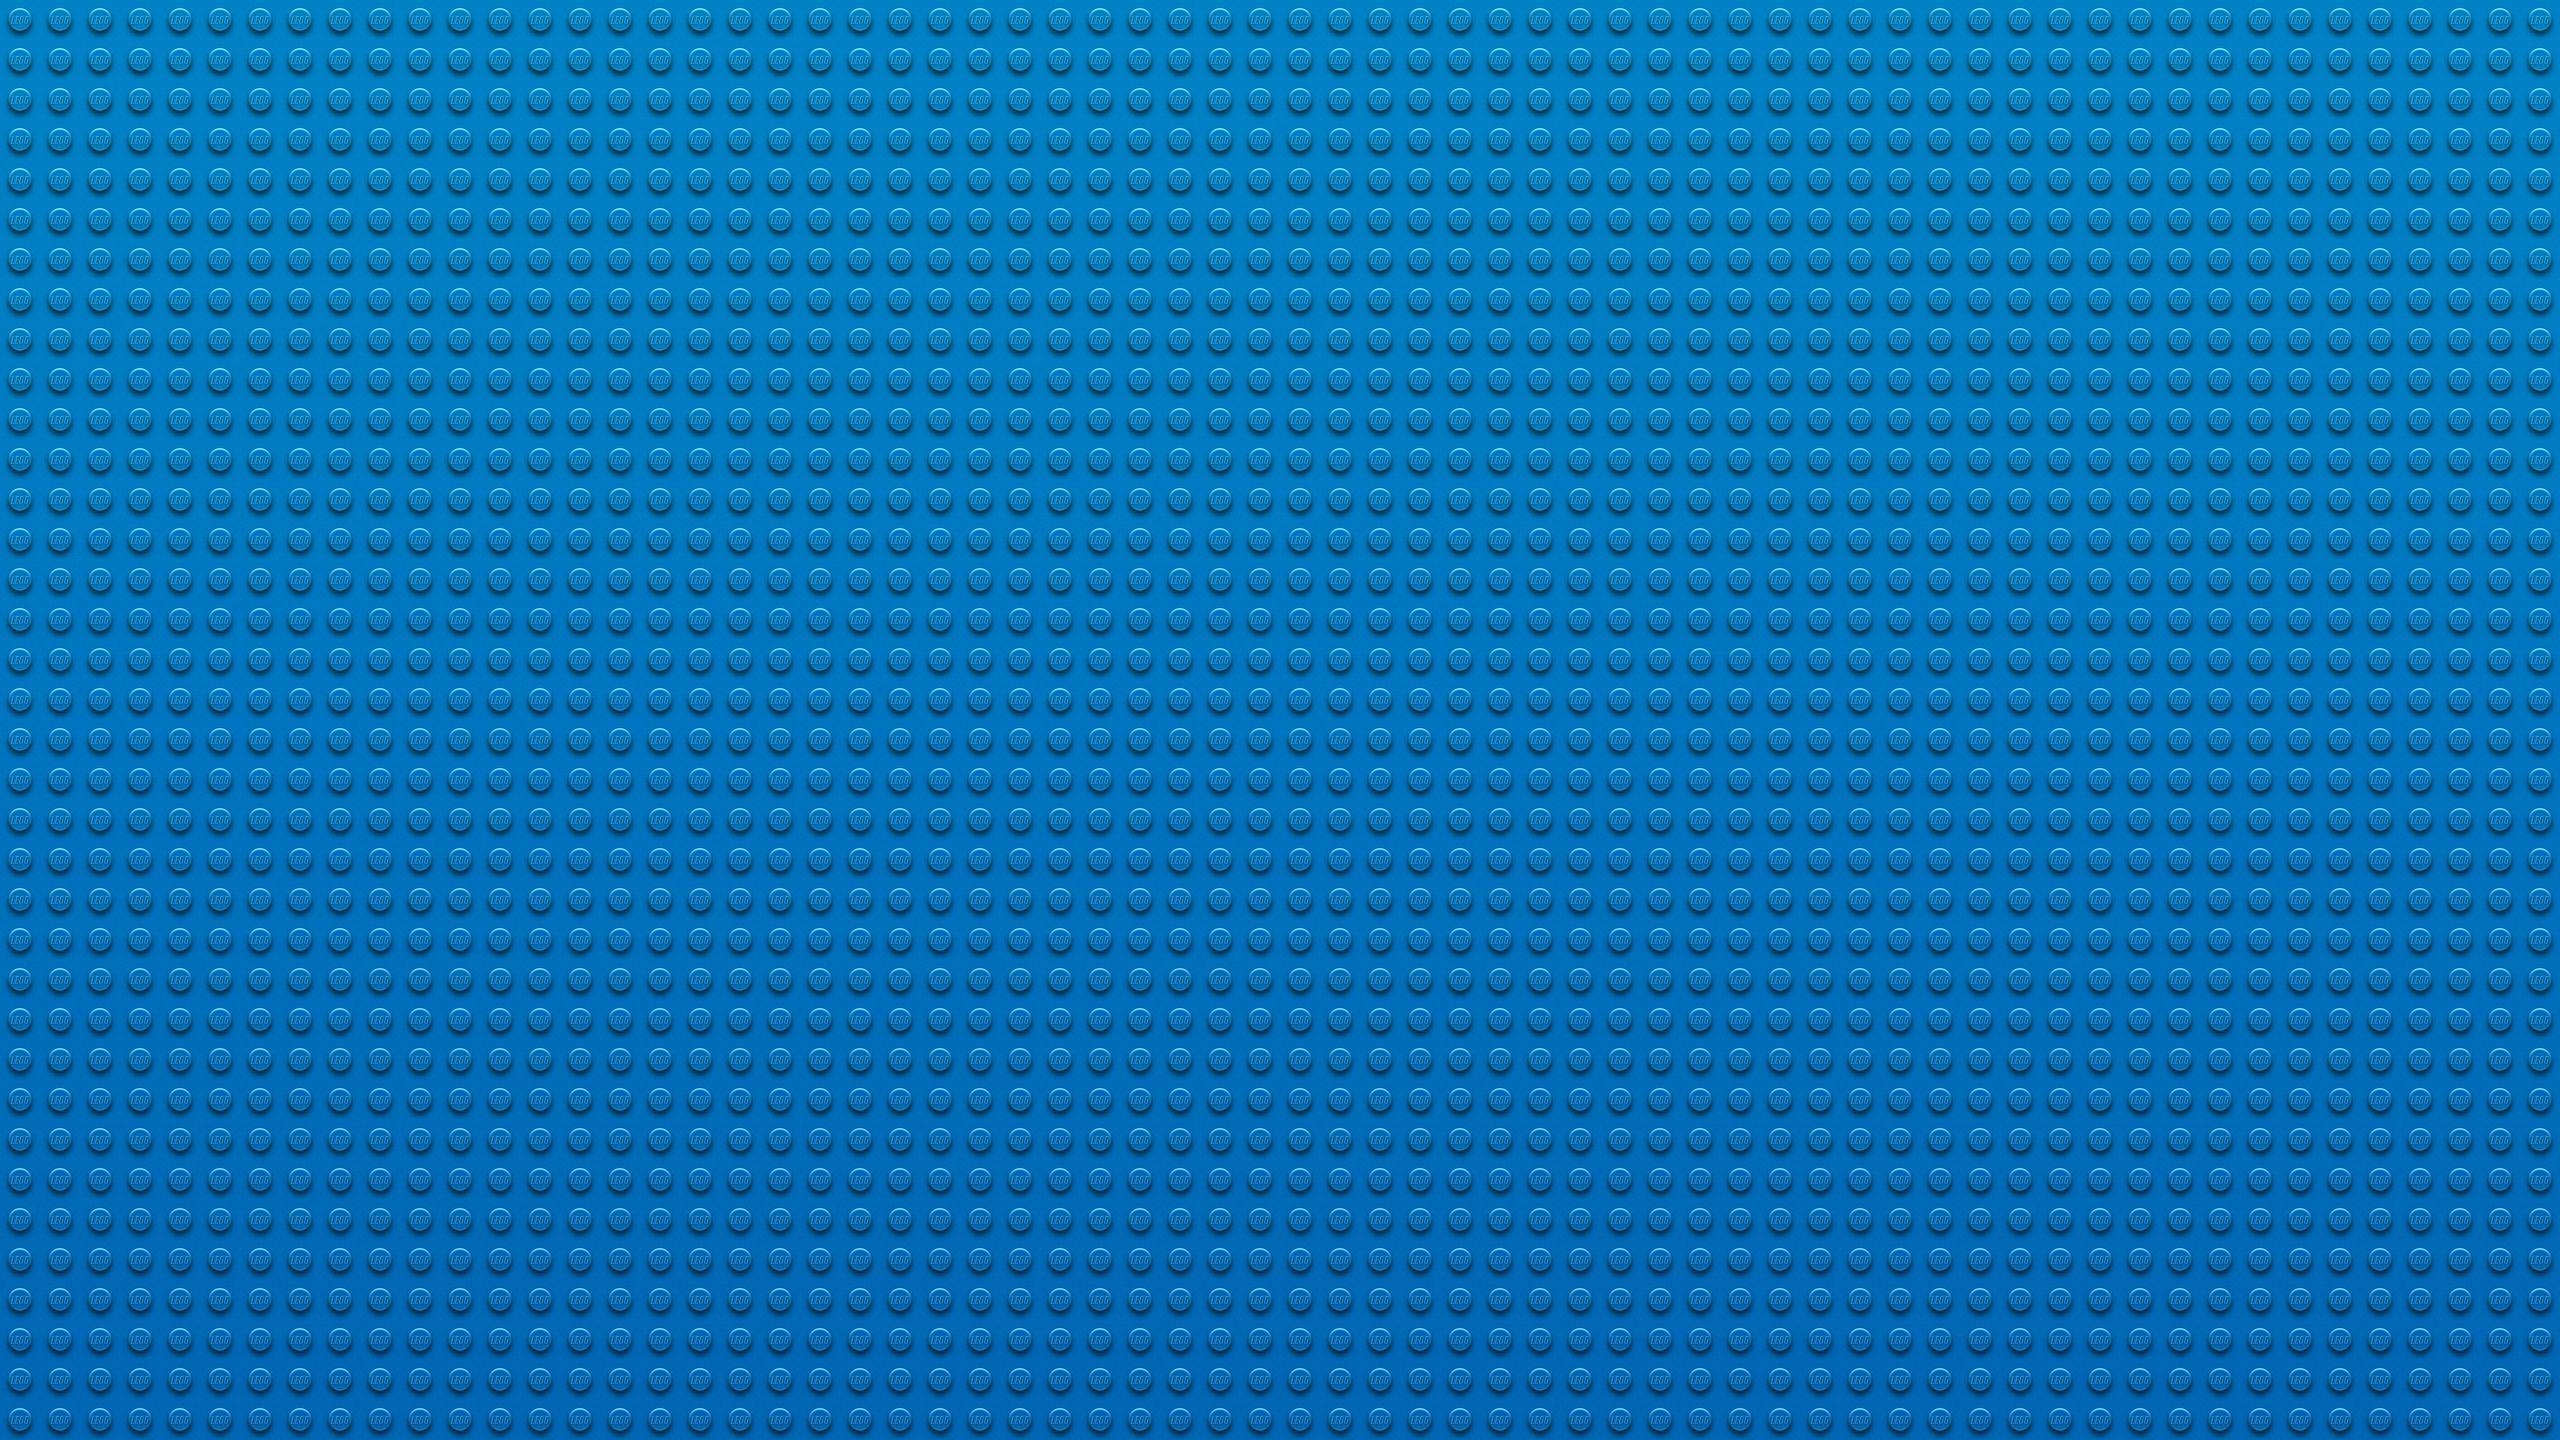 Lego Texture desktop PC and Mac wallpaper